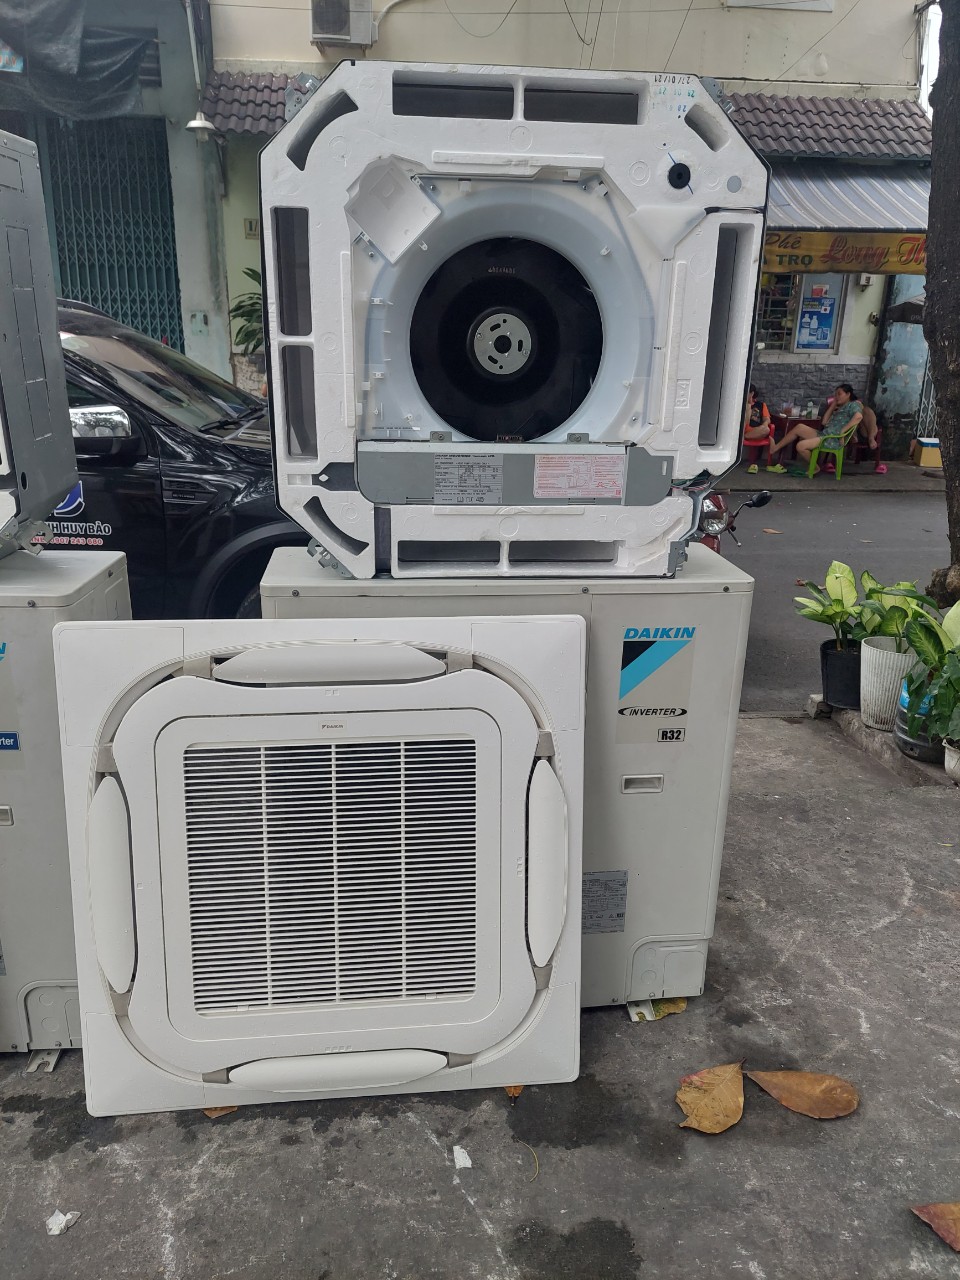 Thu Mua Máy Lạnh Cũ tại Biên Hòa | Thu mua máy lạnh cũ âm trần Biên Hòa